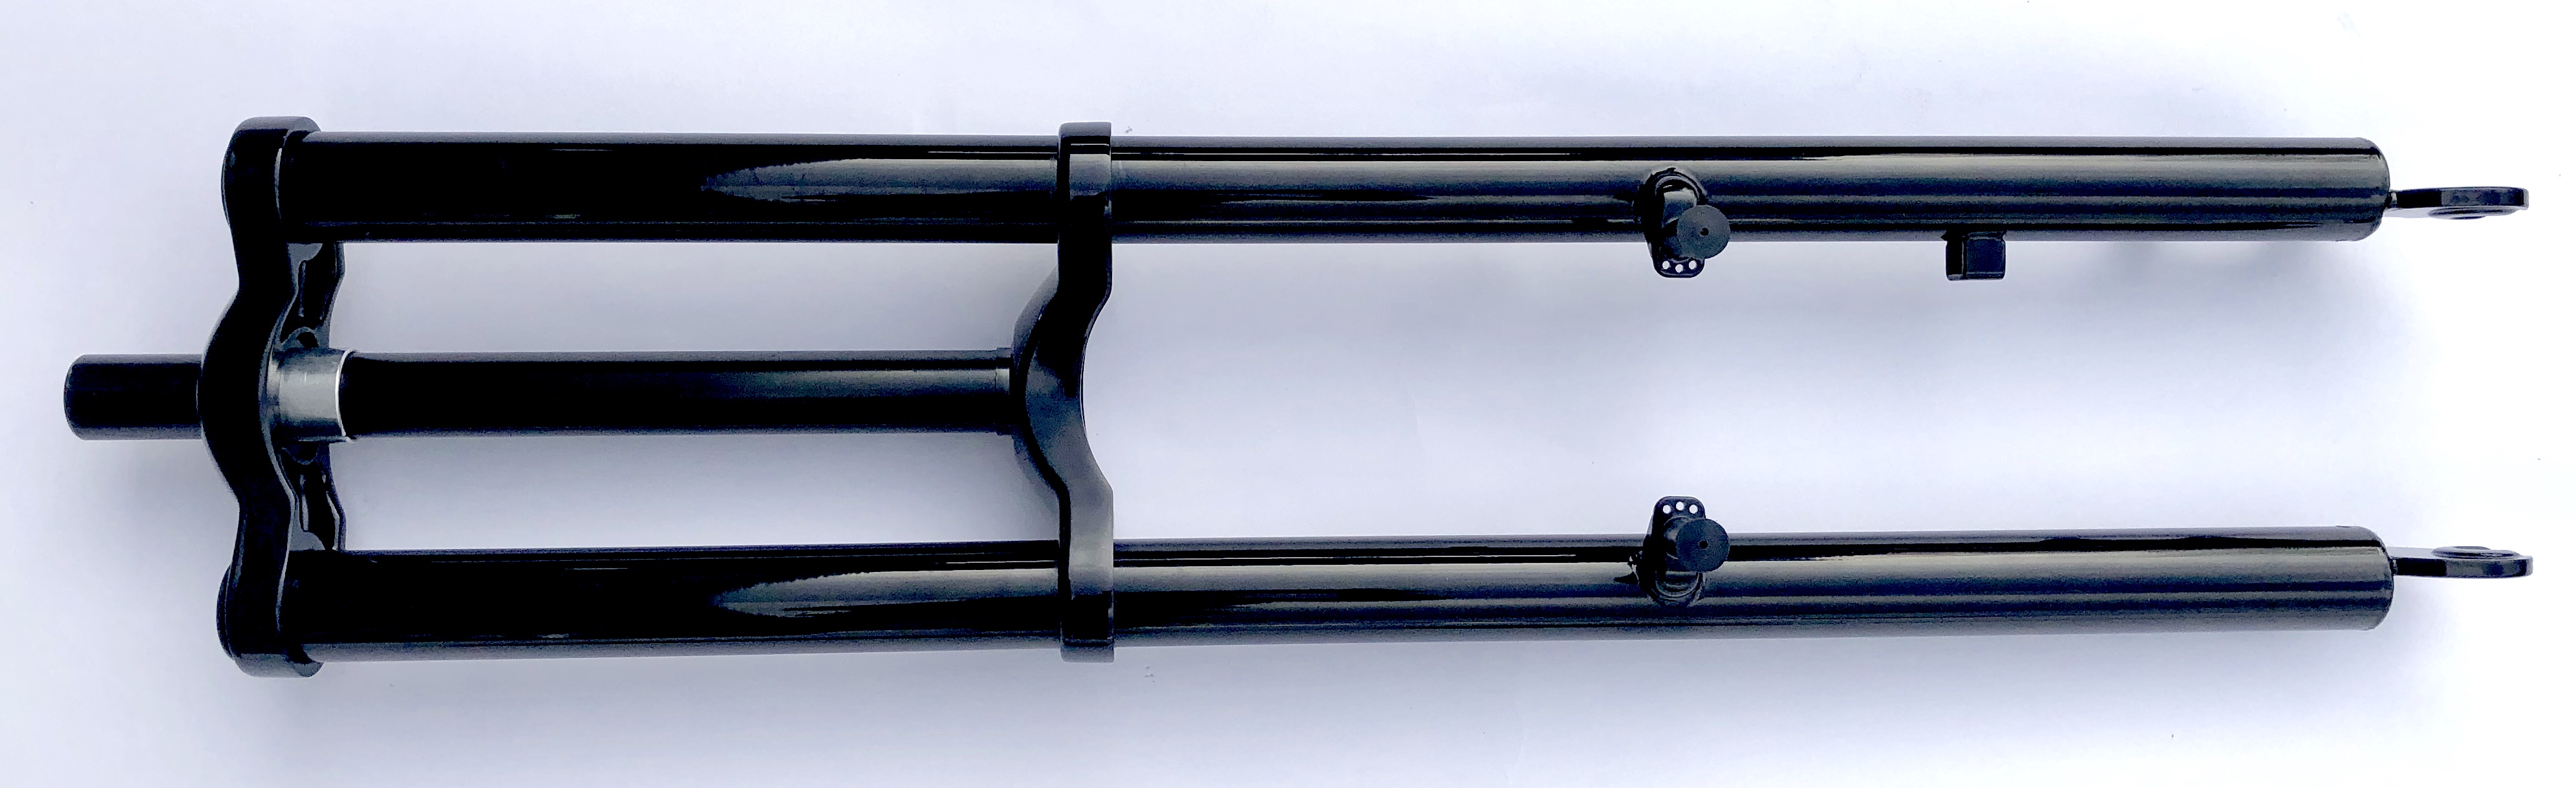 Doppelbrückengabel, schwarz 630 mm, edel für 26 Zoll-Reifen mit Cantilever Aufnahmen